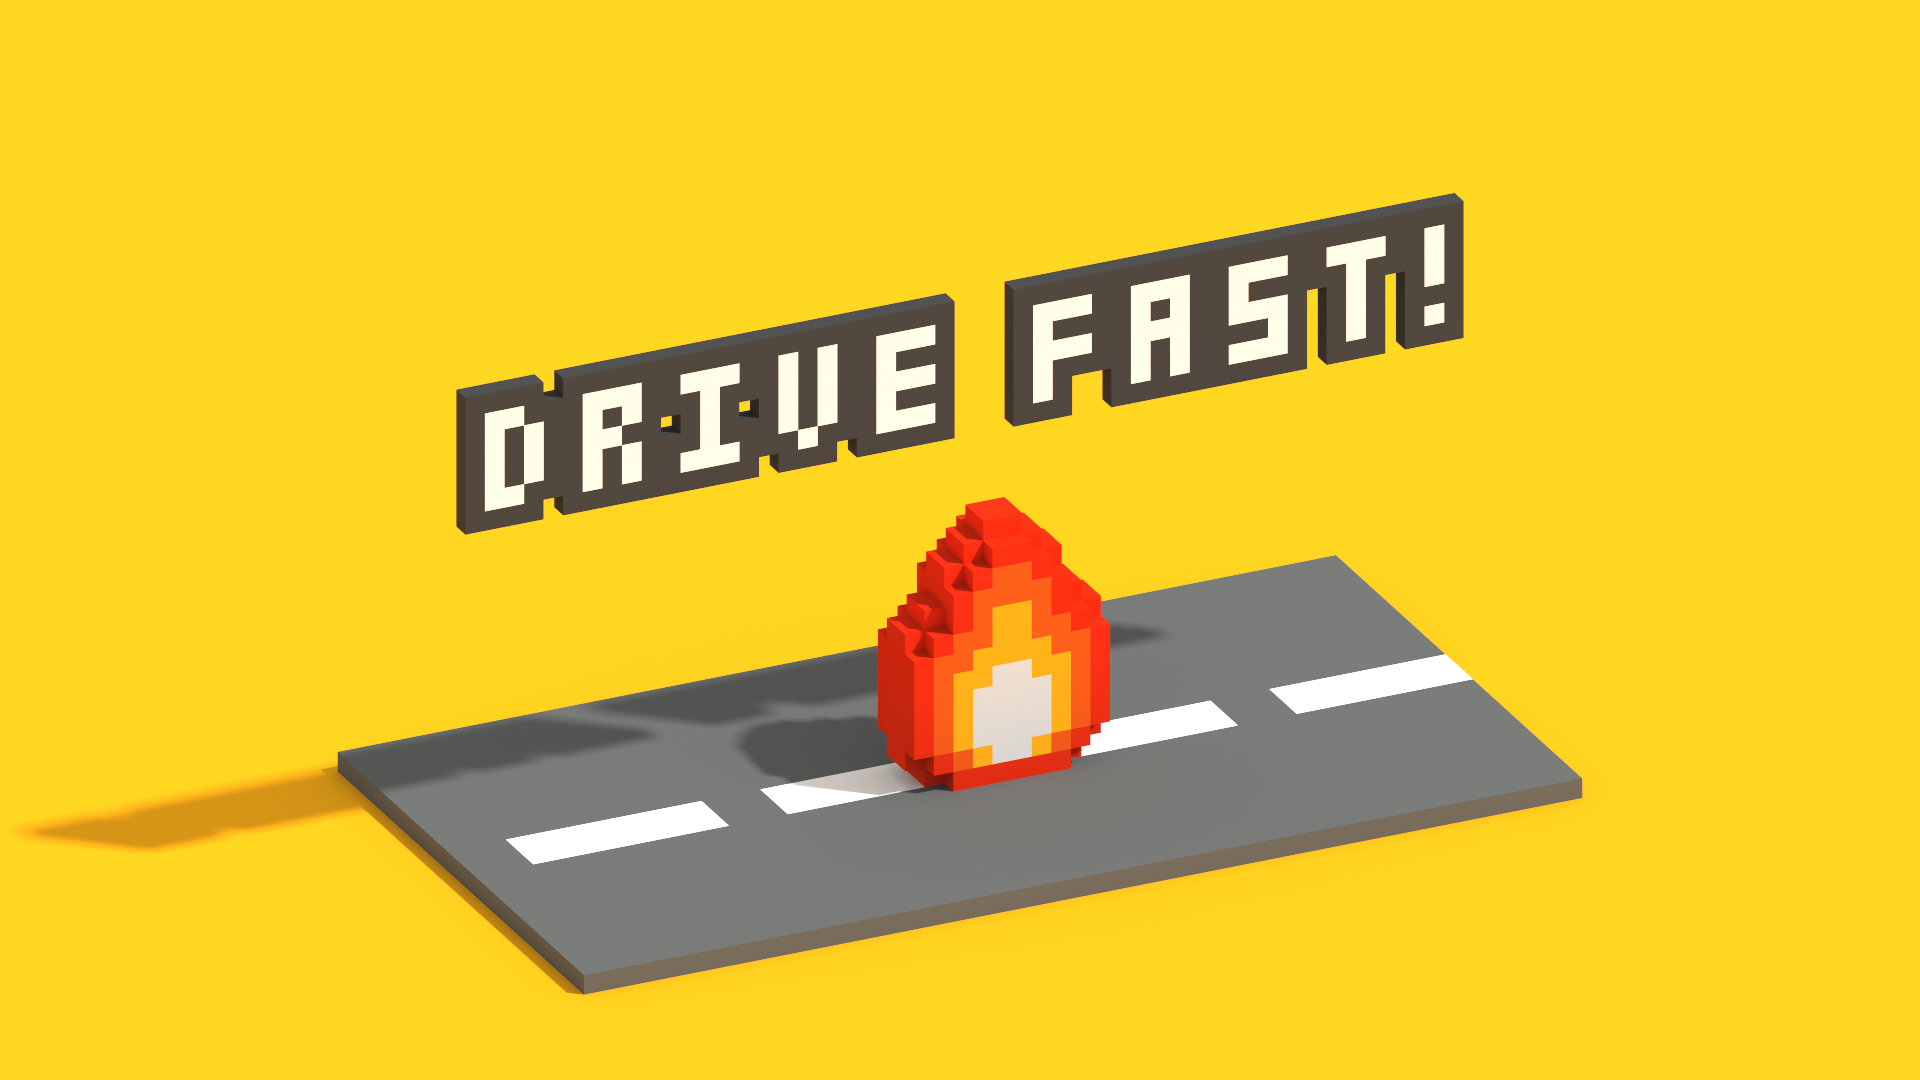 Drive Fast!